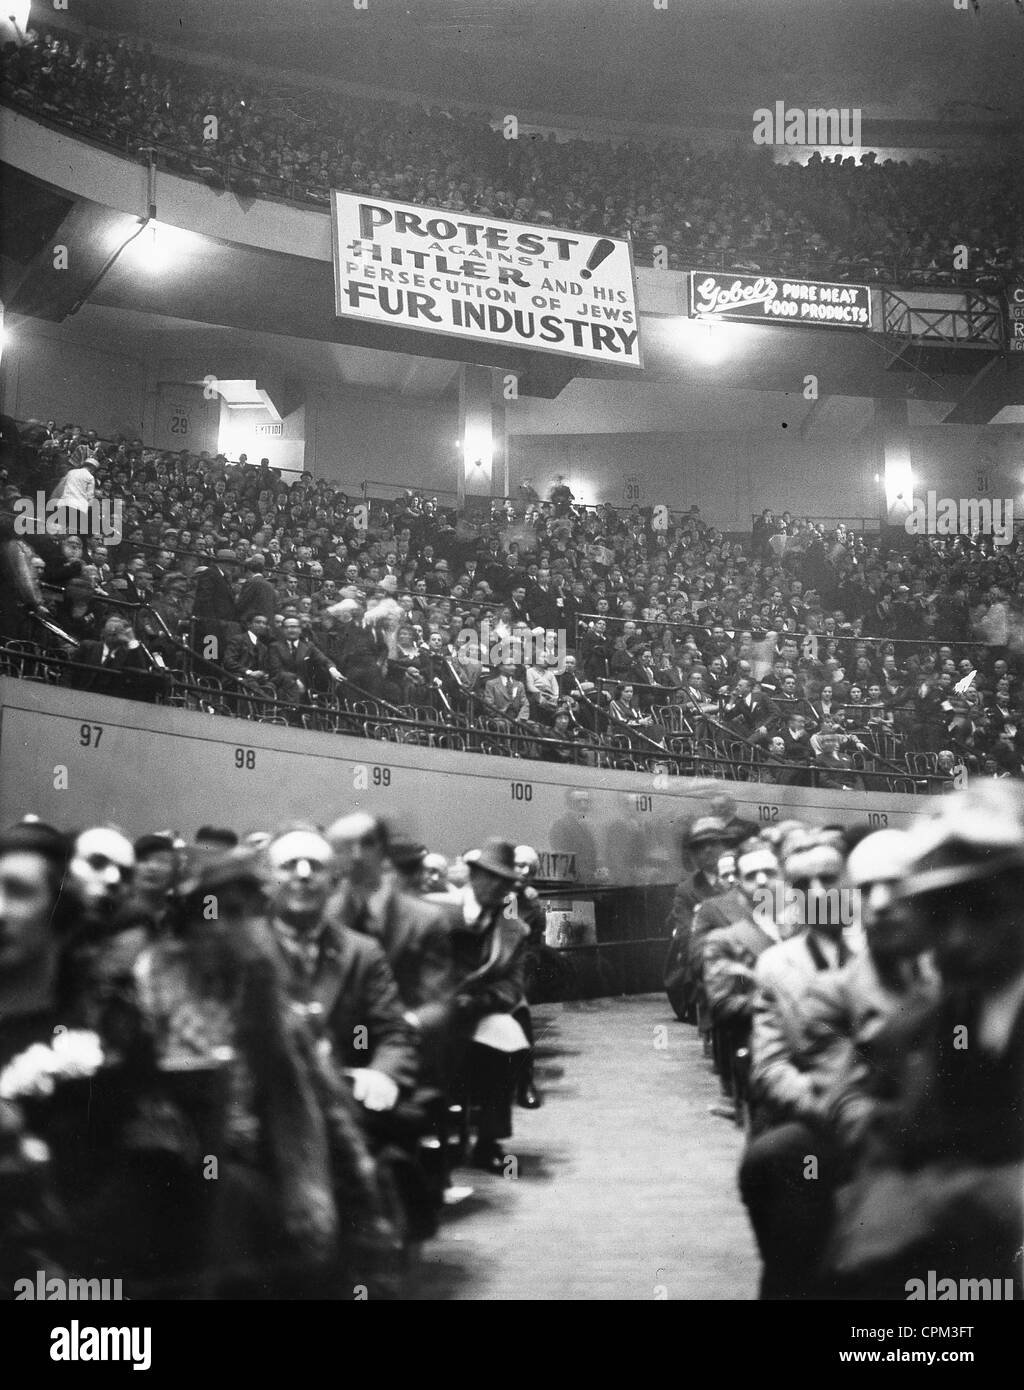 Protestation contre l'antisémitisme et le National-Socialisme de coup d'Etat, Madison Square Garden, New York, 27 mars 1933 Banque D'Images